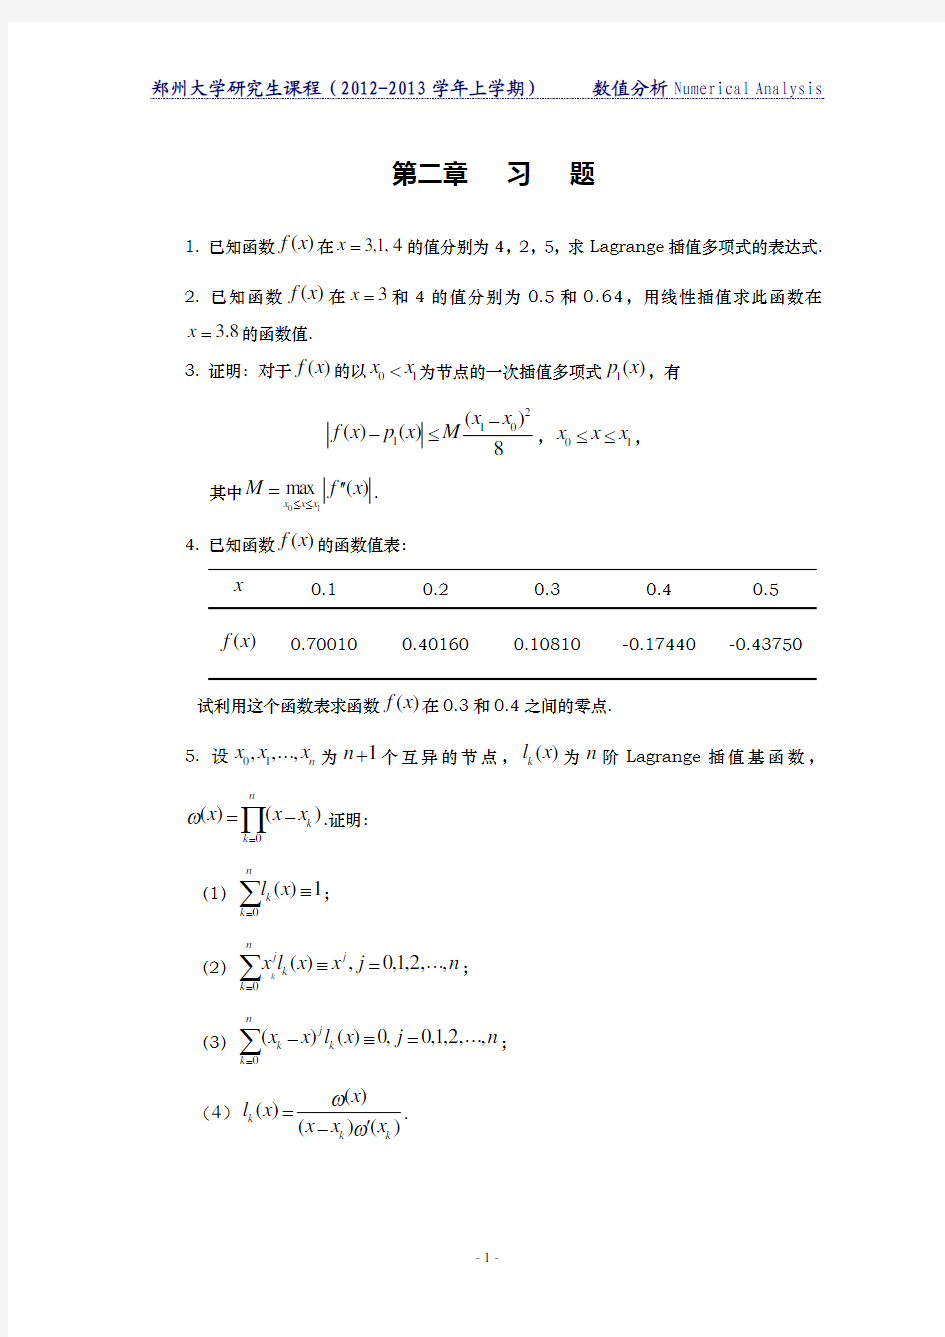 郑州大学研究生课程数值分析第二章 习题